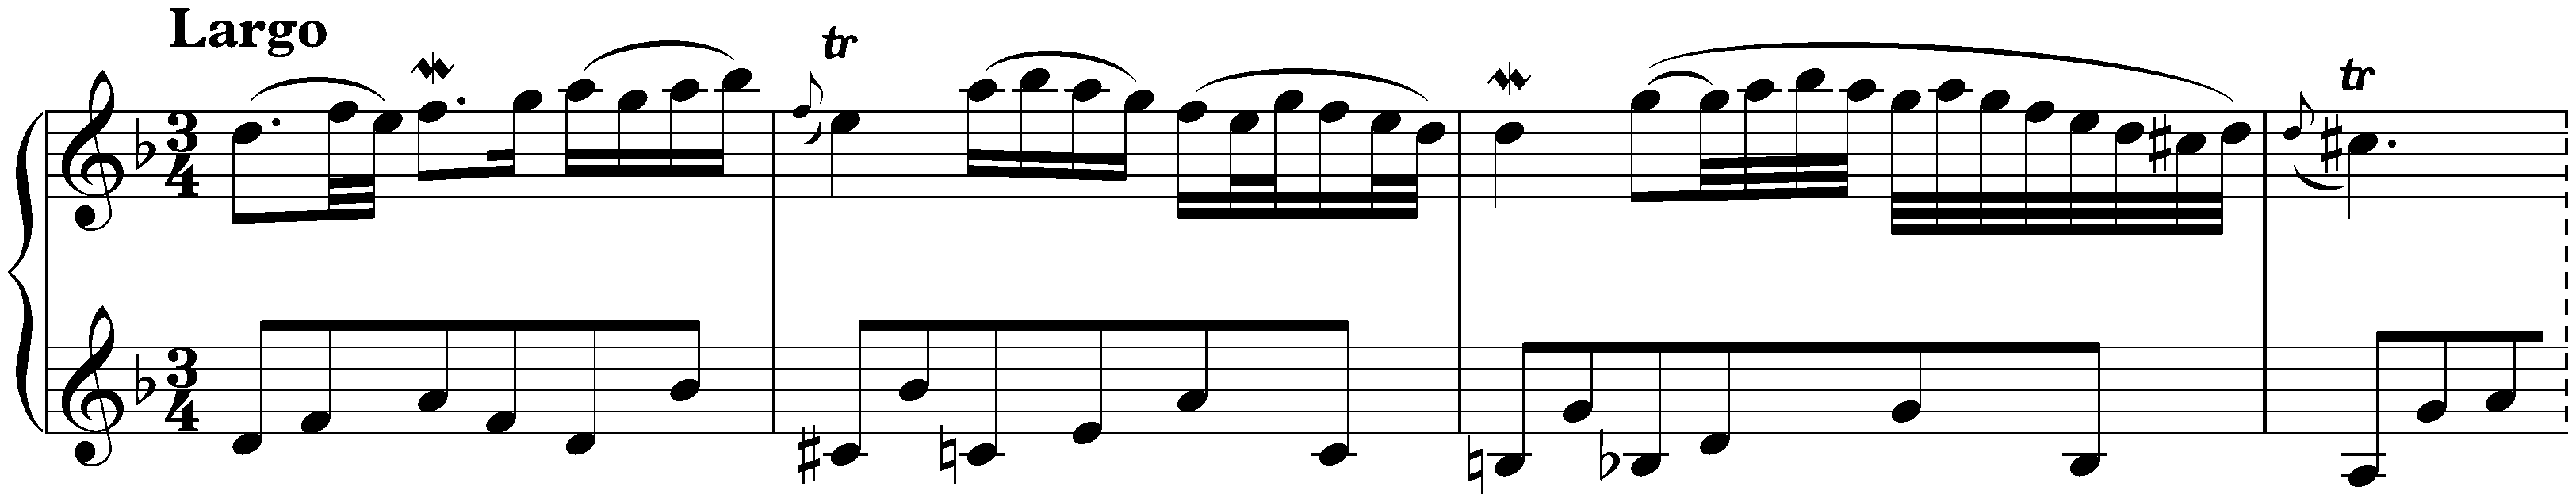 Concerto in G minor after Antonio Vivaldi, BWV 975; 2. Largo